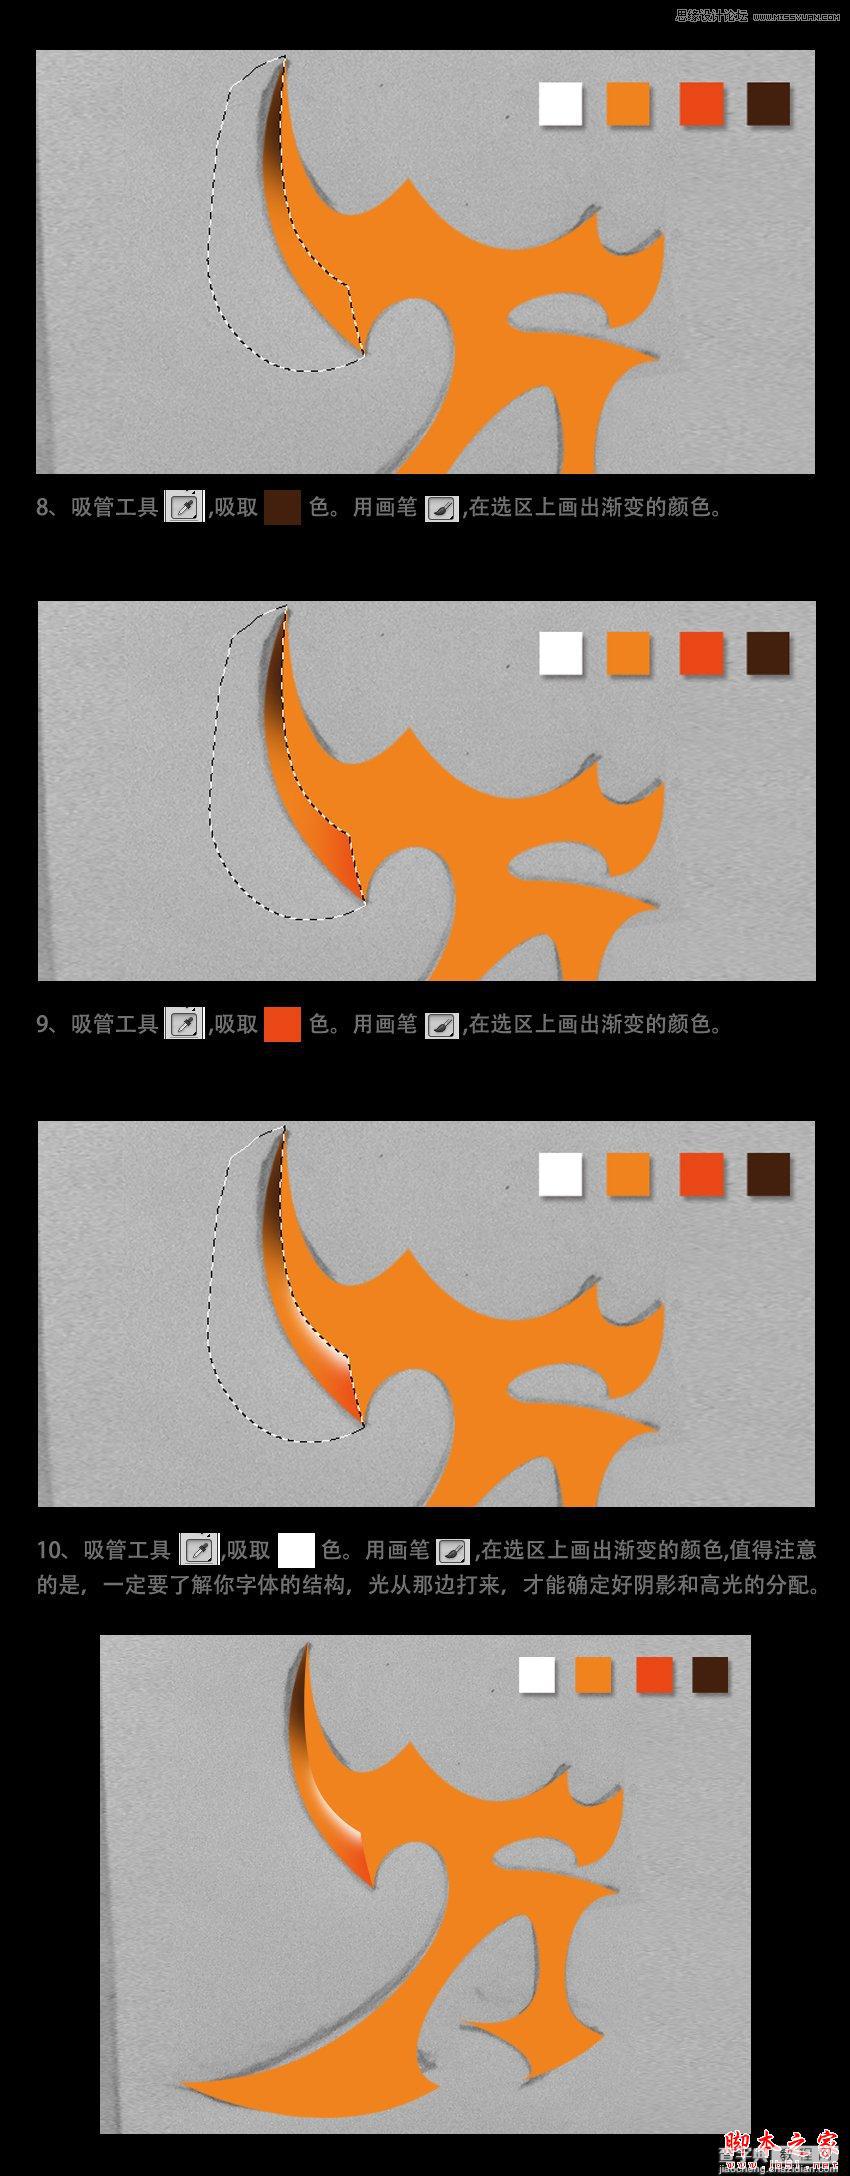 Photoshop设计制作超酷的橘黄色哥特字体教程4